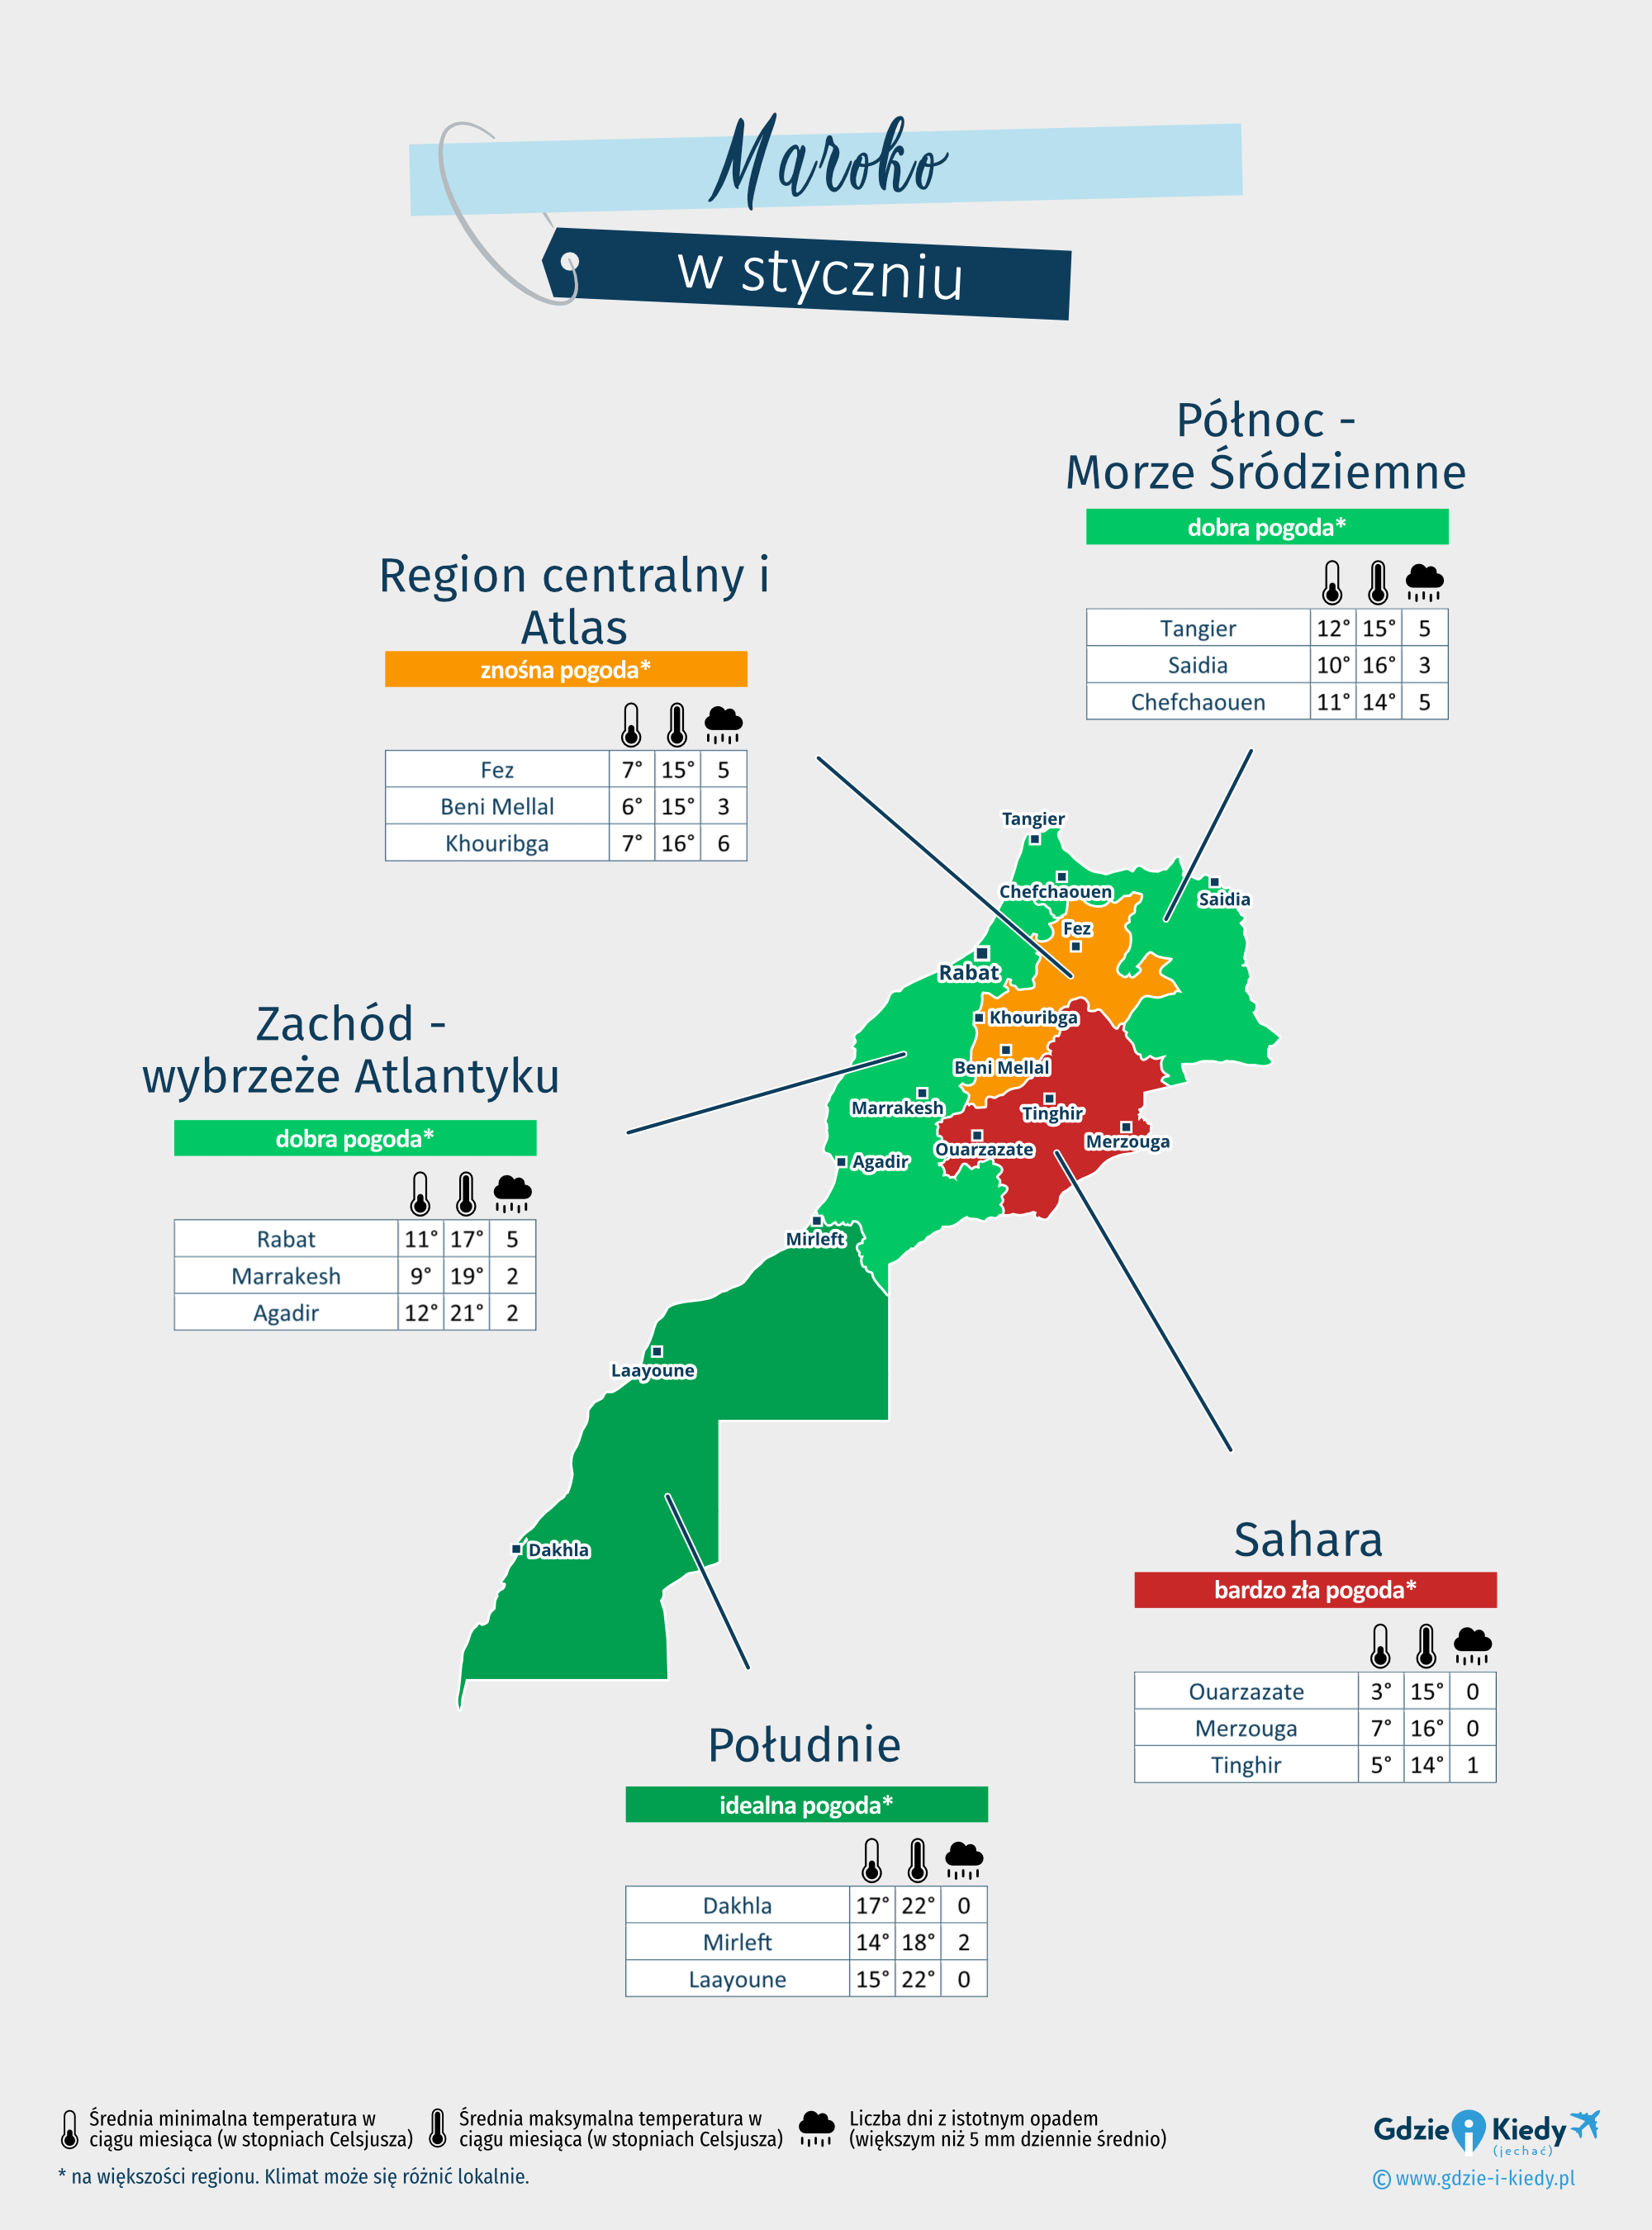 Maroko: mapa pogody w styczniu w różnych regionach